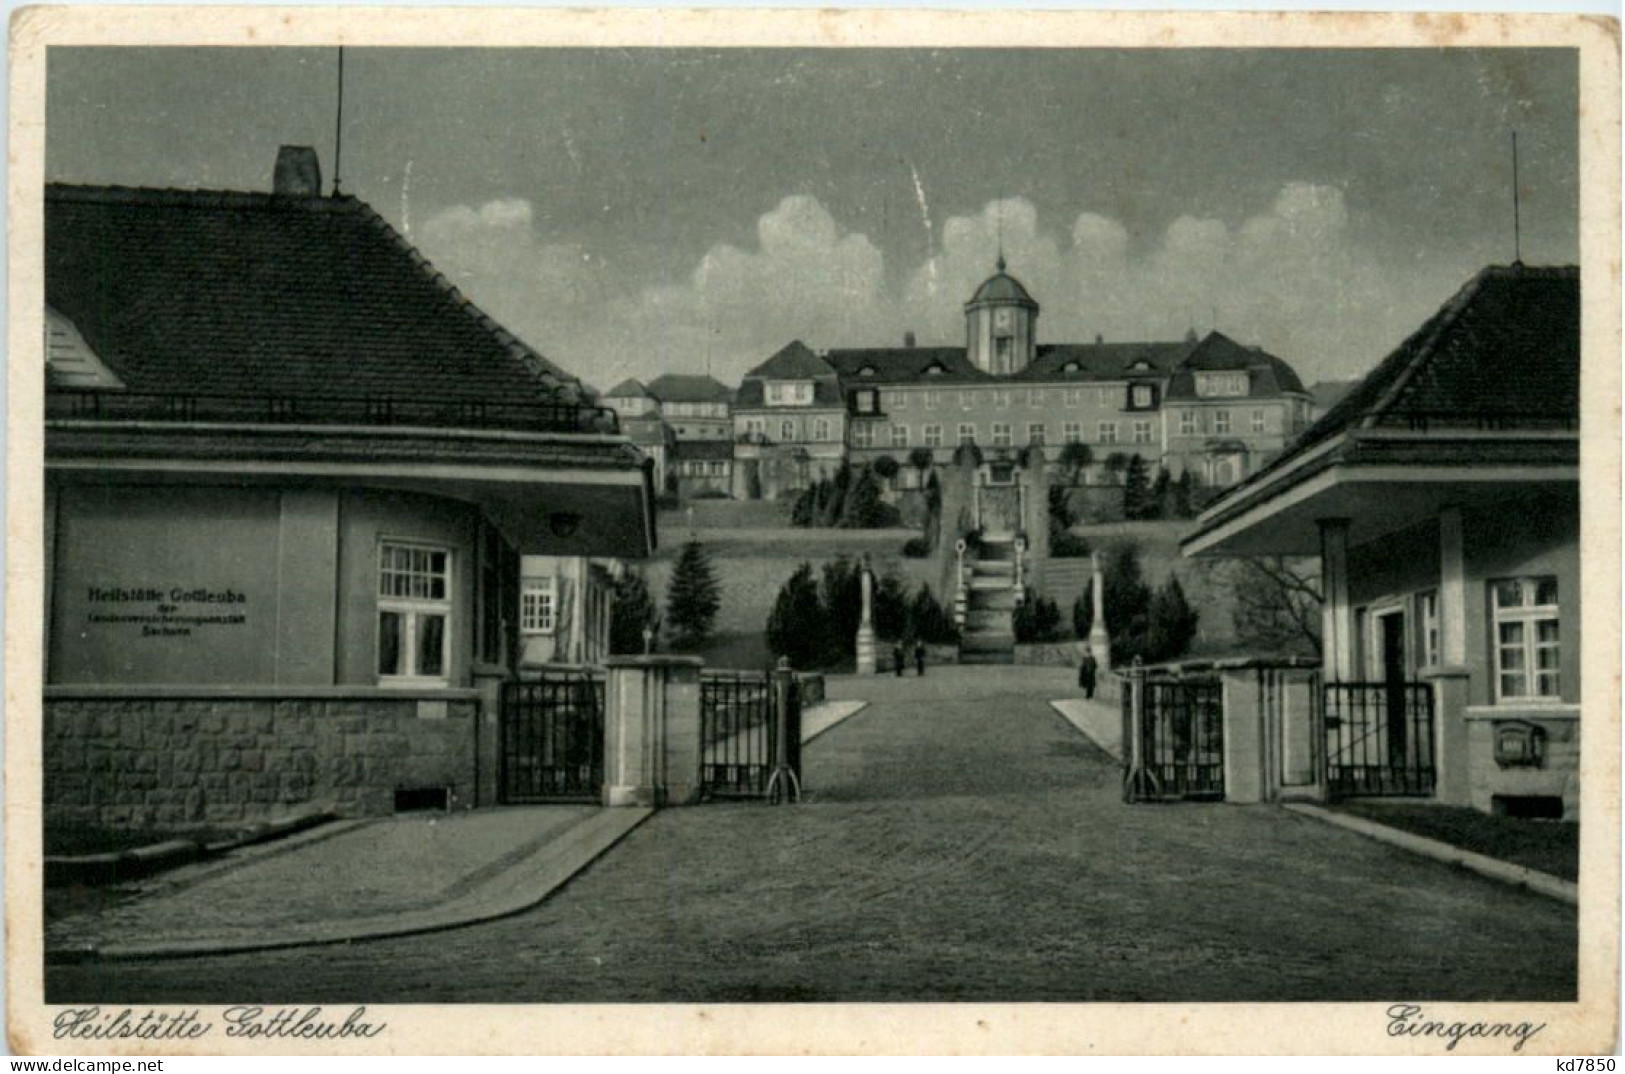 Heilstätte Gottleuba, Eingang - Bad Gottleuba-Berggiesshuebel